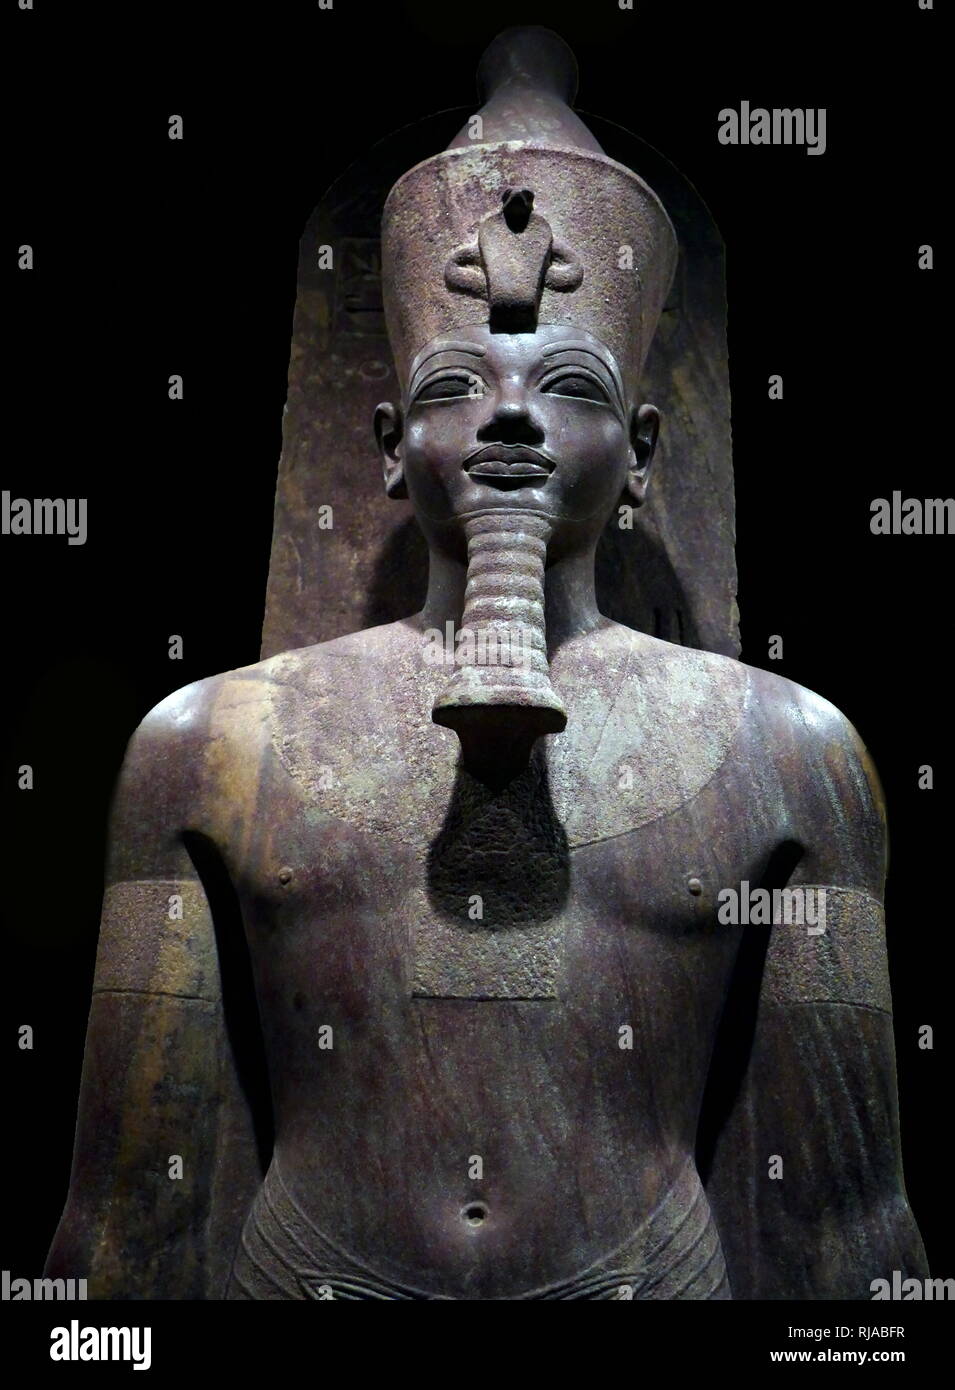 Die Statue von König Amenhotep III (Amenophis III), auch als Amenhotep, der herrlichen bekannt, der 9 Und der Pharao wurde der achtzehnten Dynastie. Nach verschiedenen Autoren, er regierte Ägypten von Juni 1386 bis 1349 v. Chr. oder 1388 v. Chr. von Juni bis Dezember 1351 v. Chr./1350 v. Chr., nachdem sein Vater Thutmosis IV. starb. Seine Regierungszeit war eine Periode beispielloser Wohlstand und künstlerischen Pracht, als Ägypten den Höhepunkt seines künstlerischen und internationalen Leistung erreicht. Als er in der 38. oder 39. Jahr seines Kï¿½igreichs starb, seinen Sohn zunächst als Amenophis IV., aber dann seine eigenen königlichen Namen Echnaton. Stockfoto